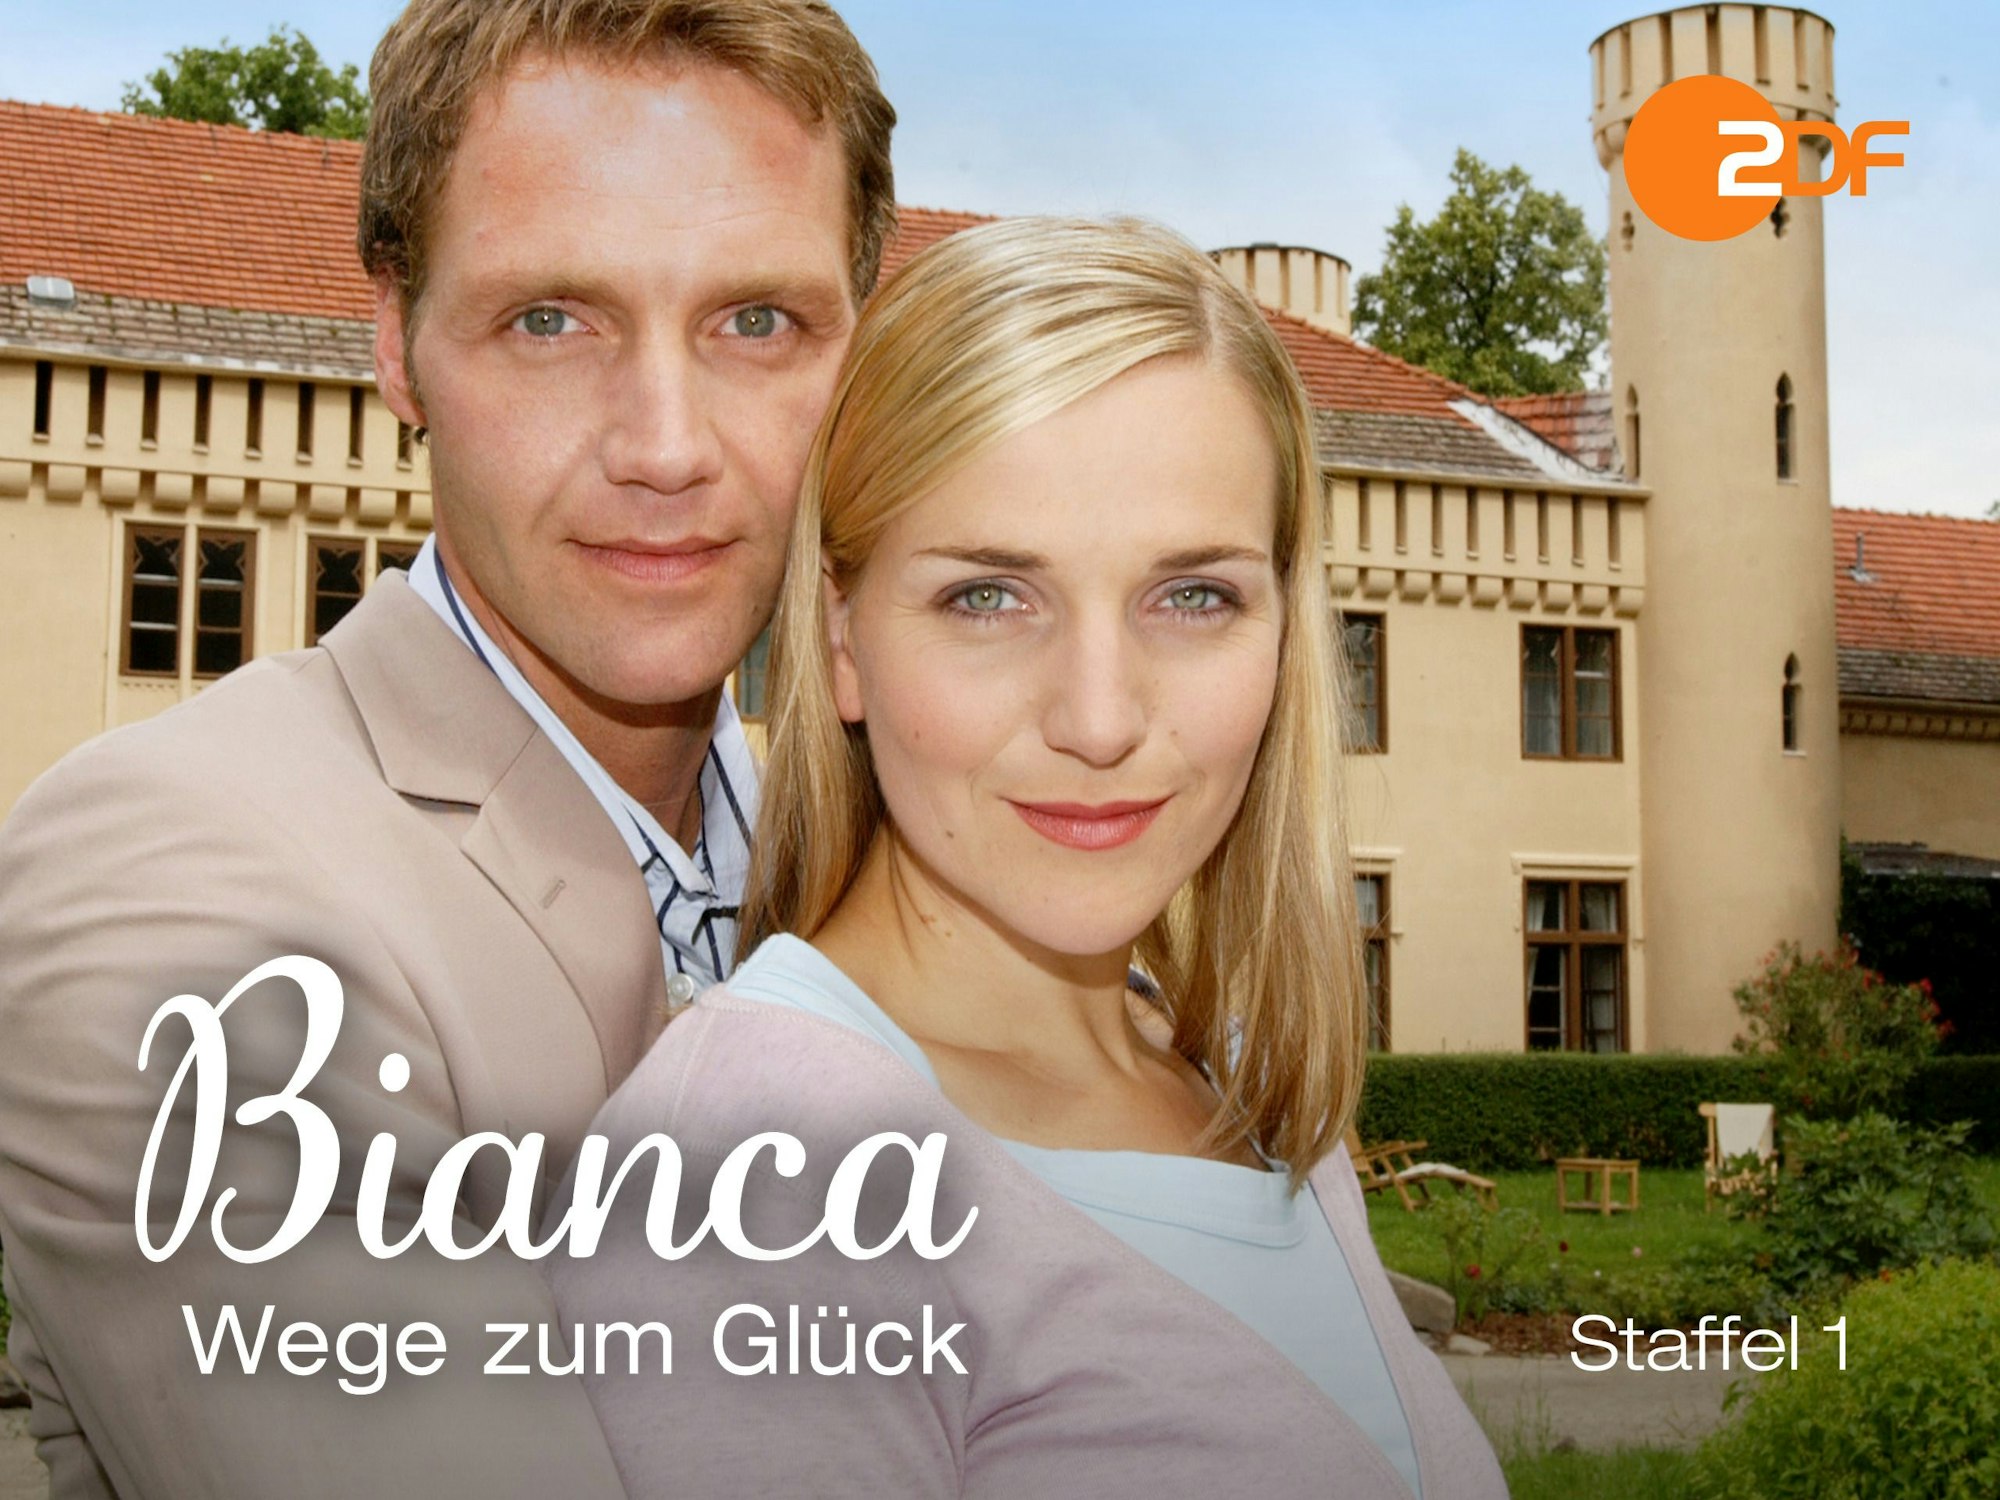 Vom 1. November 2004 bis zum 5. Oktober 2005 lief mit Bianca – Wege zum Glück die erste deutsche Telenovela im Fernsehen.